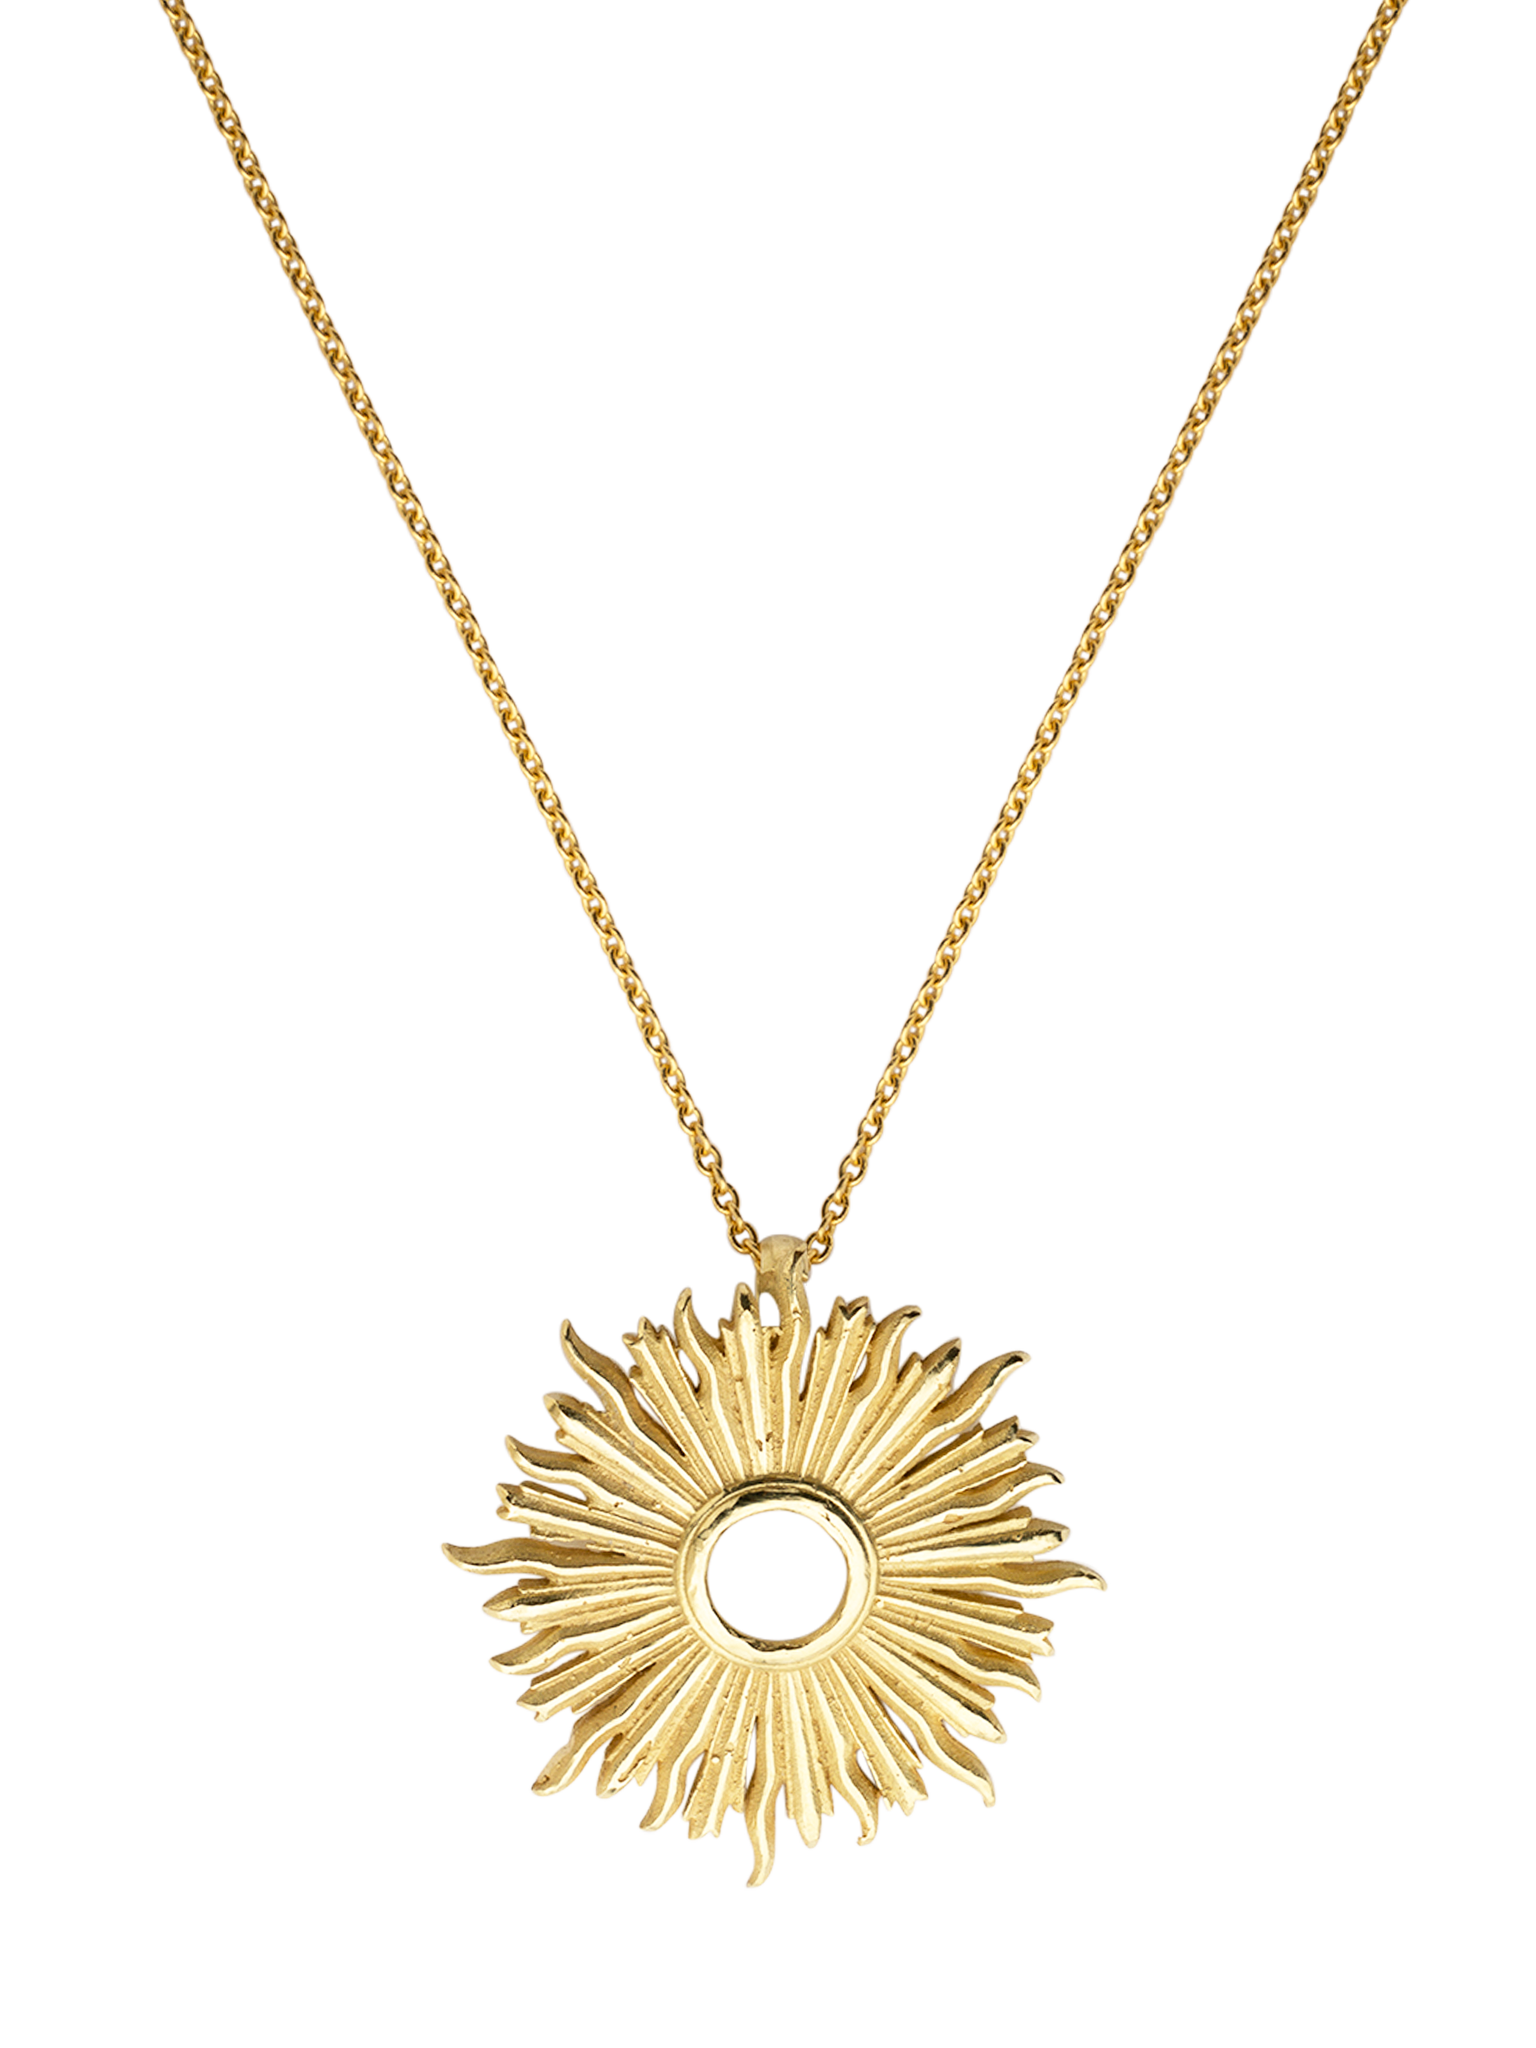 Large plain sunburst necklace